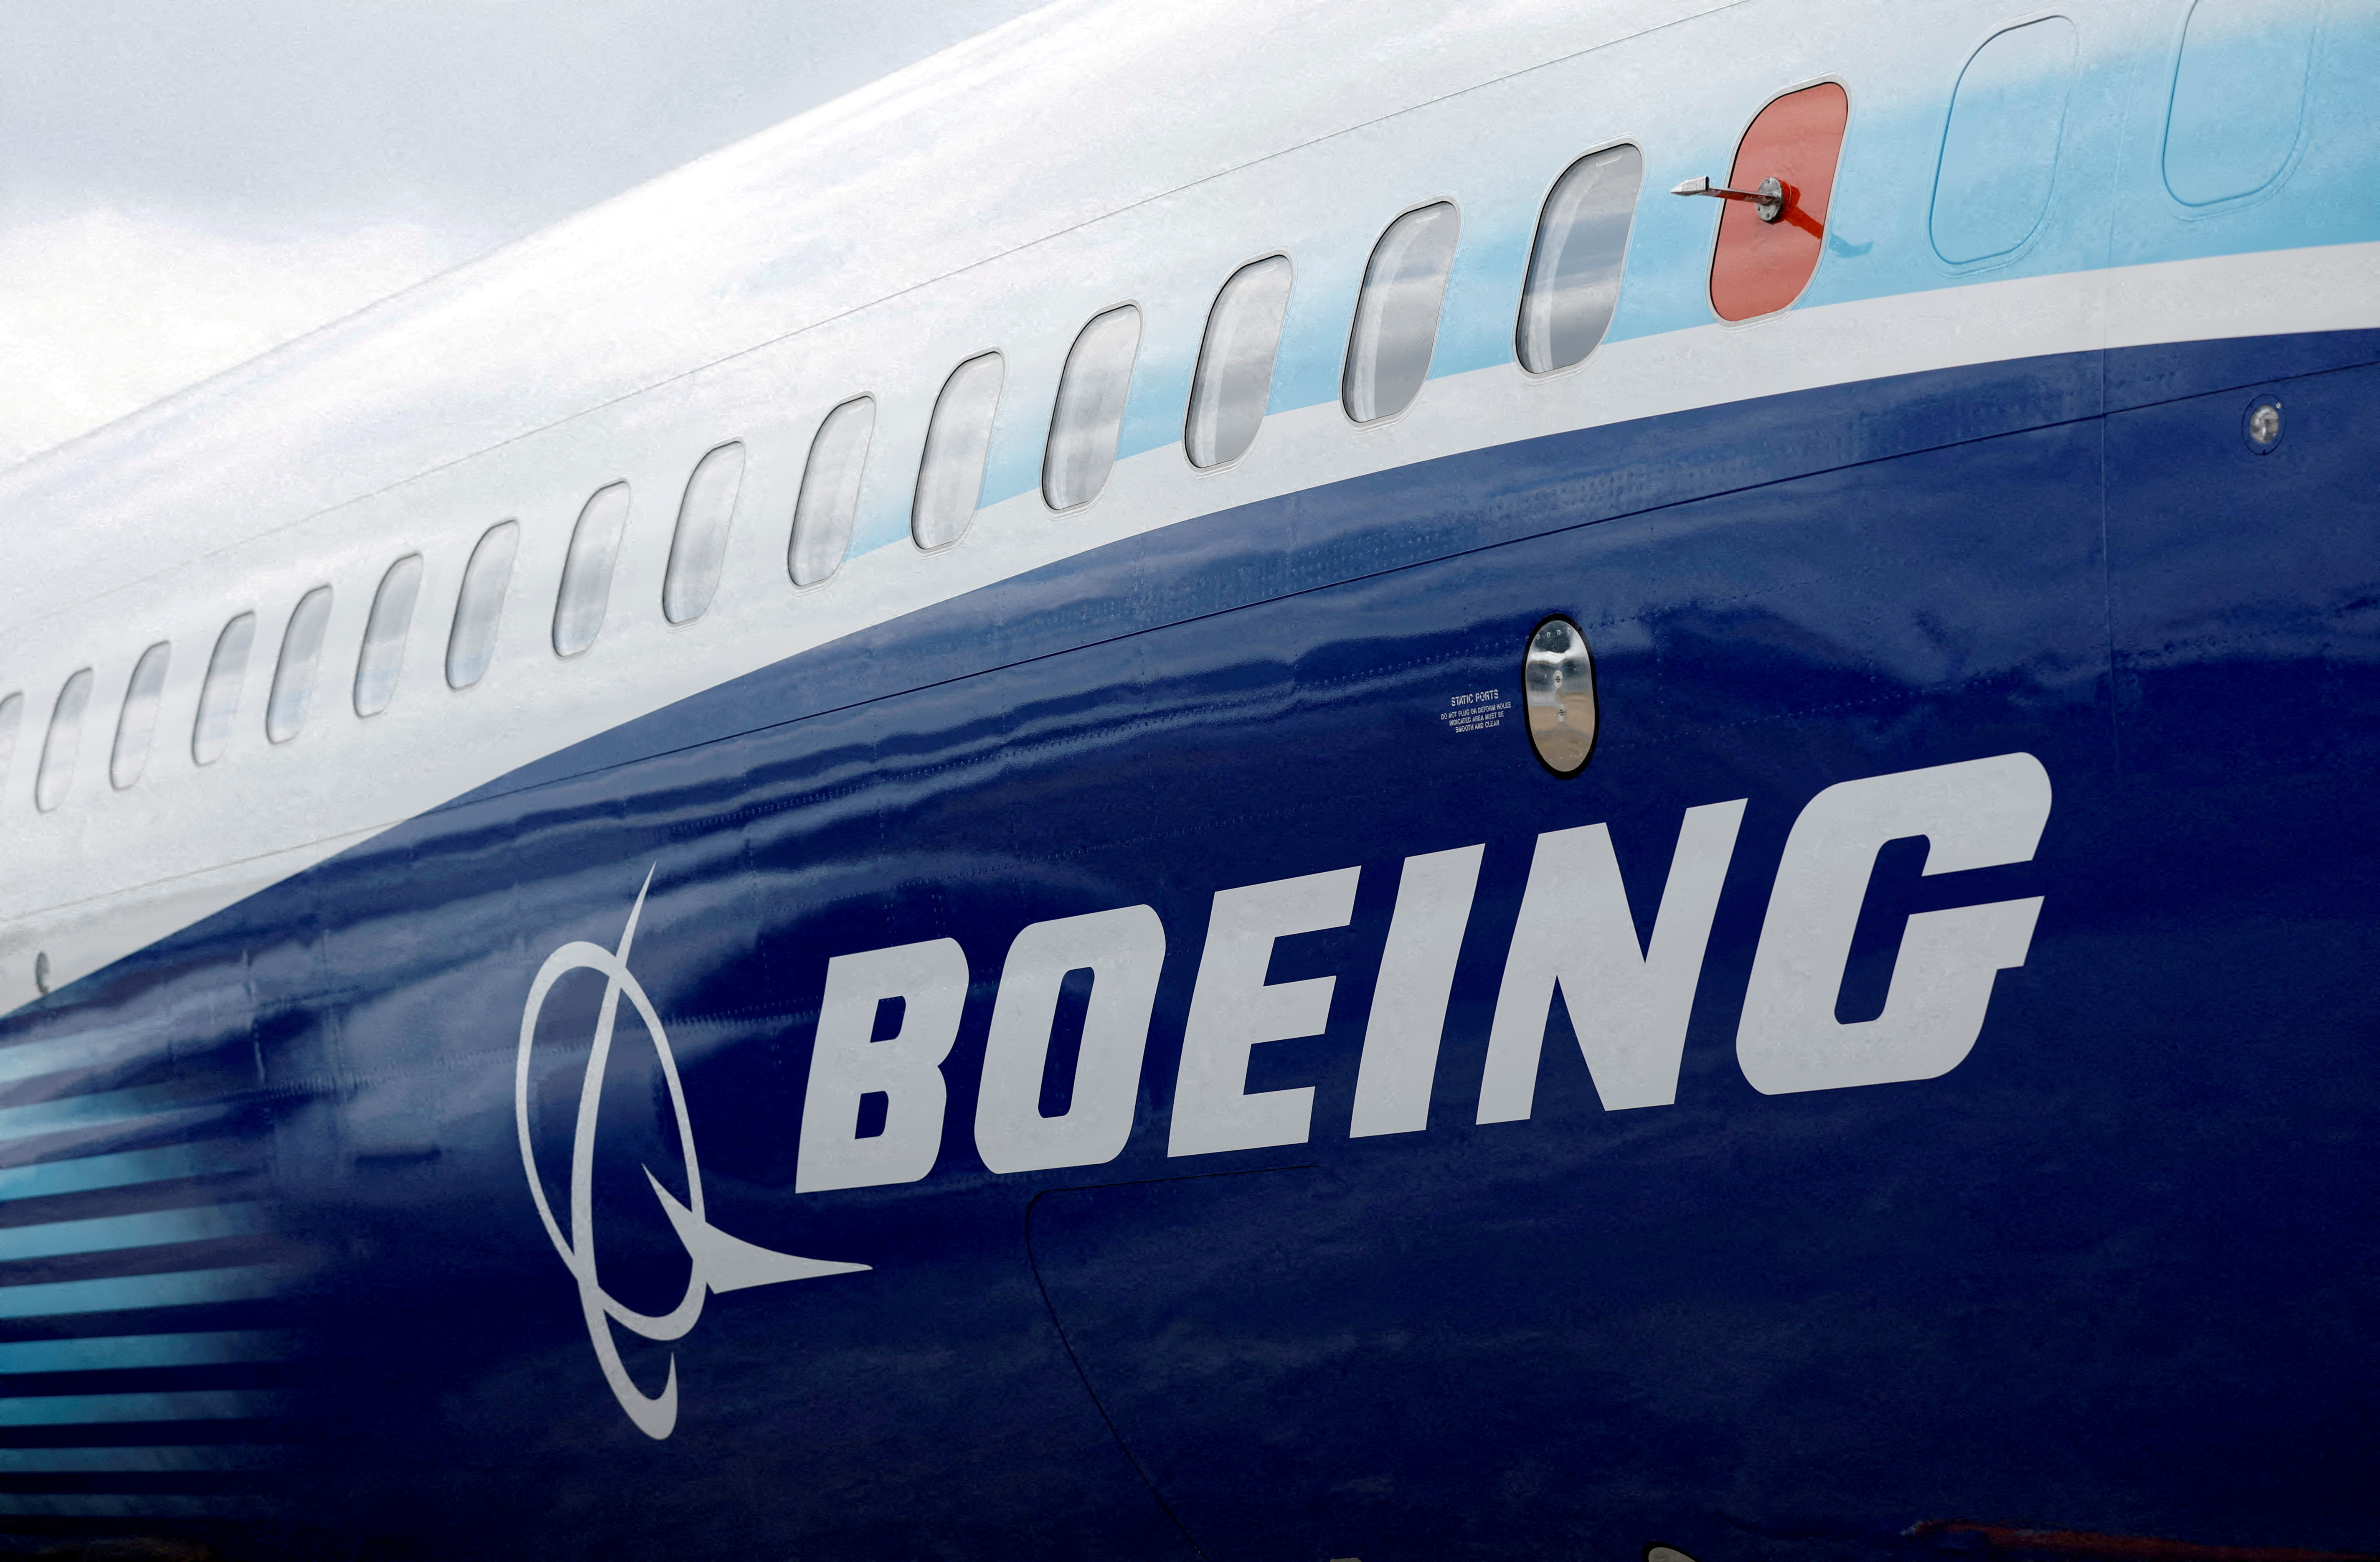 Airbus conserve sa ceinture mondiale en gagnant aux points contre Boeing qui évite le KO